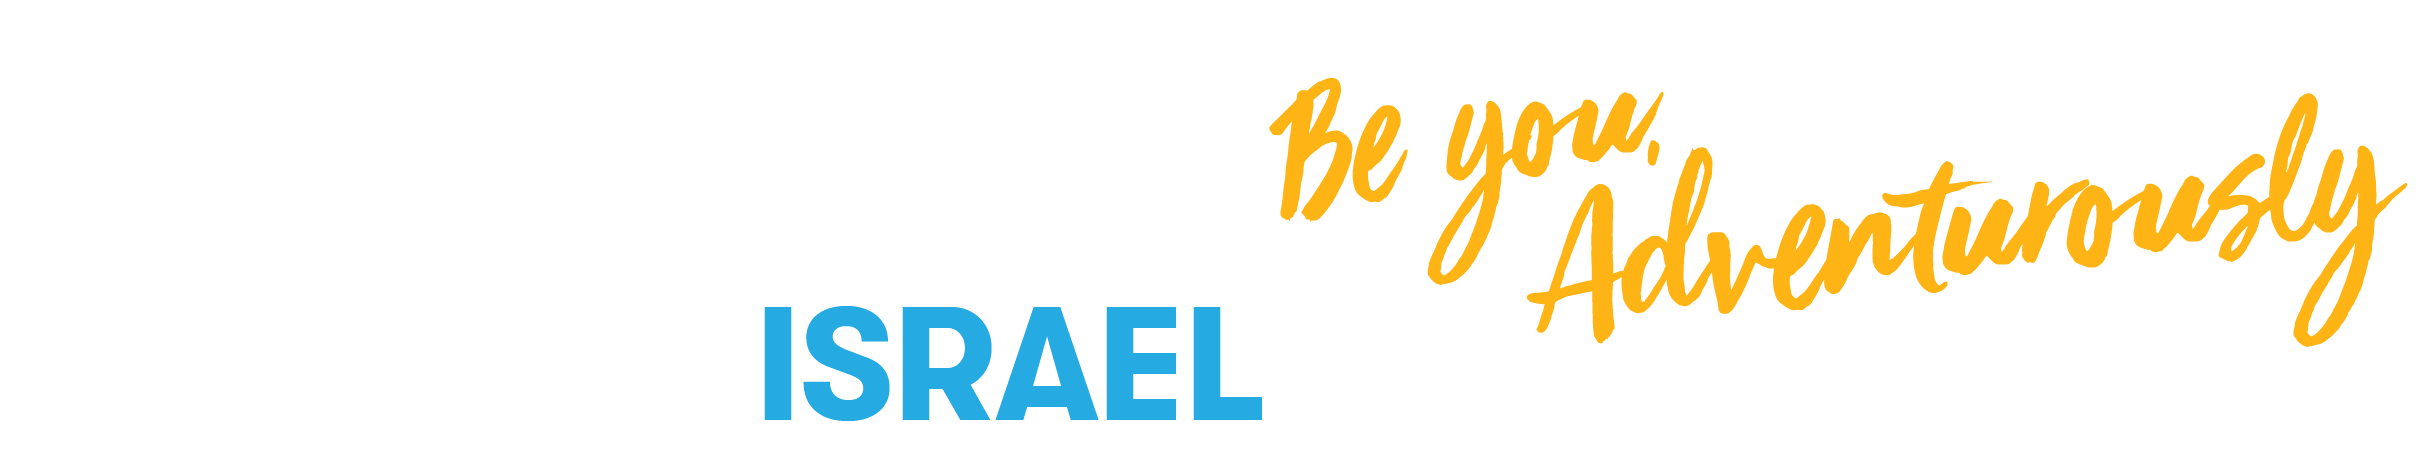 Havaya Israel